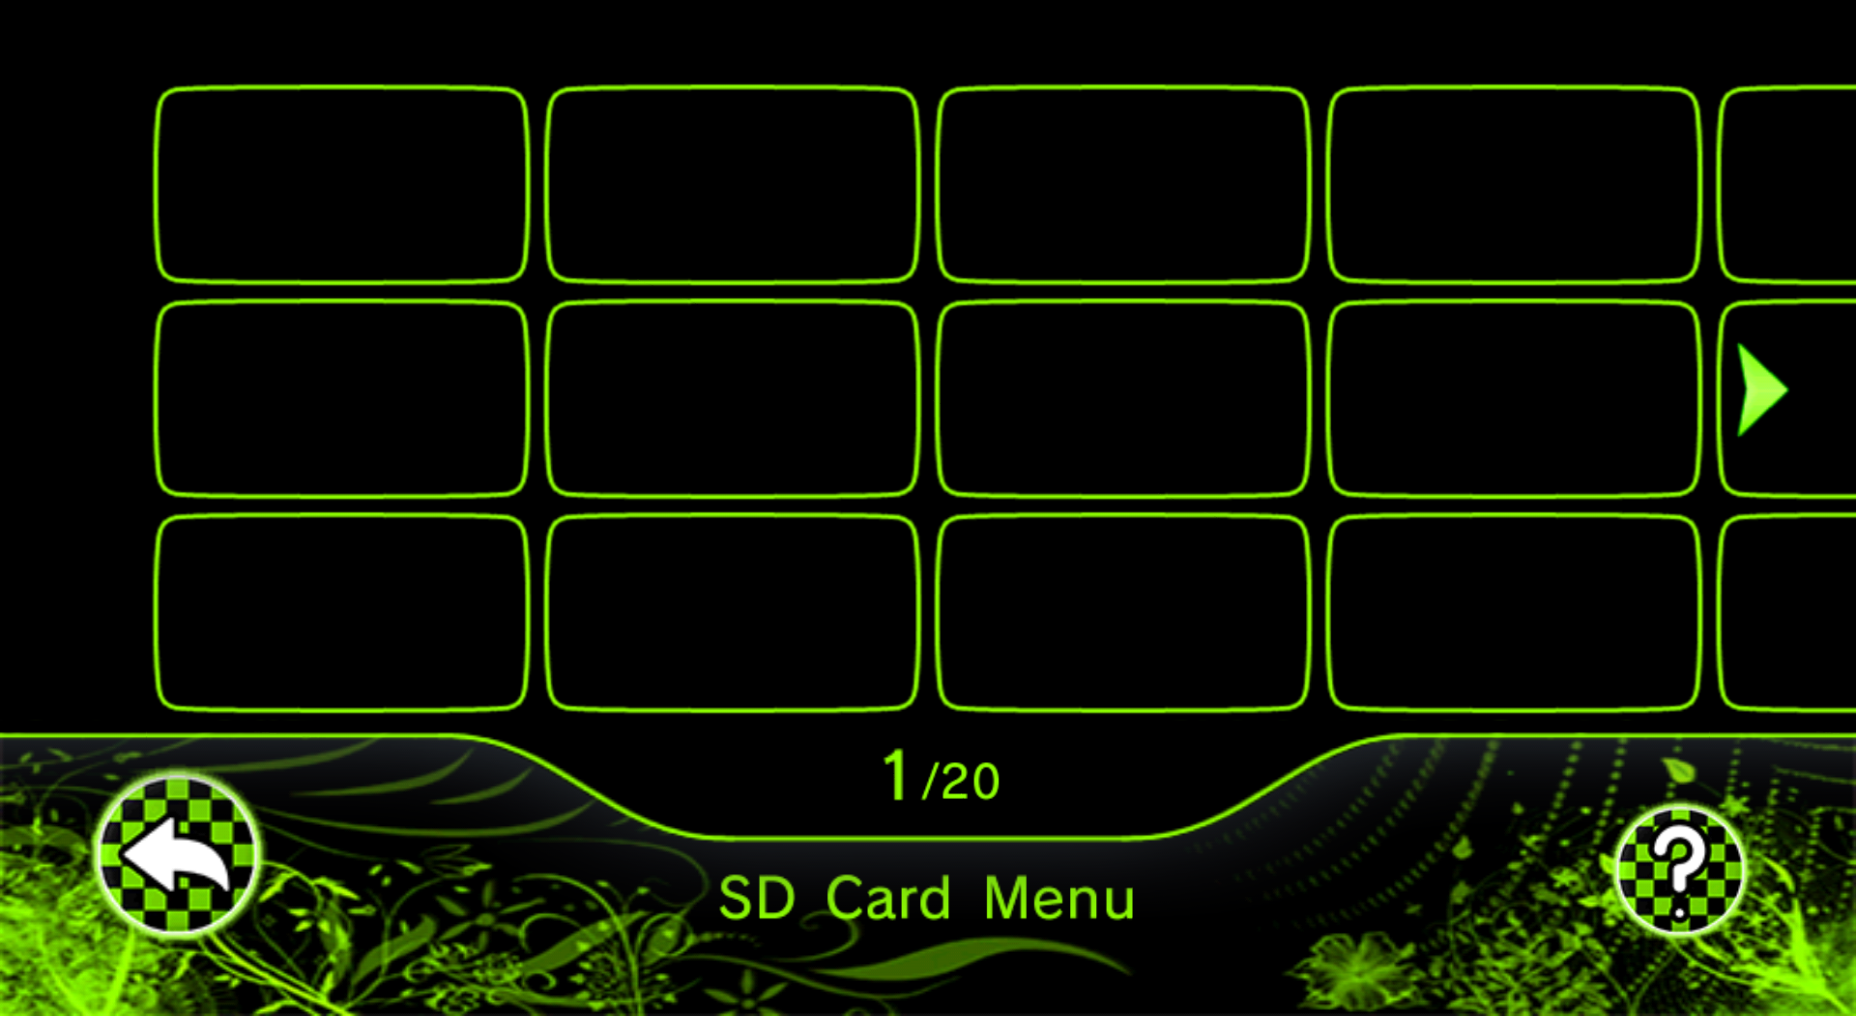 SD Card Menu - Green